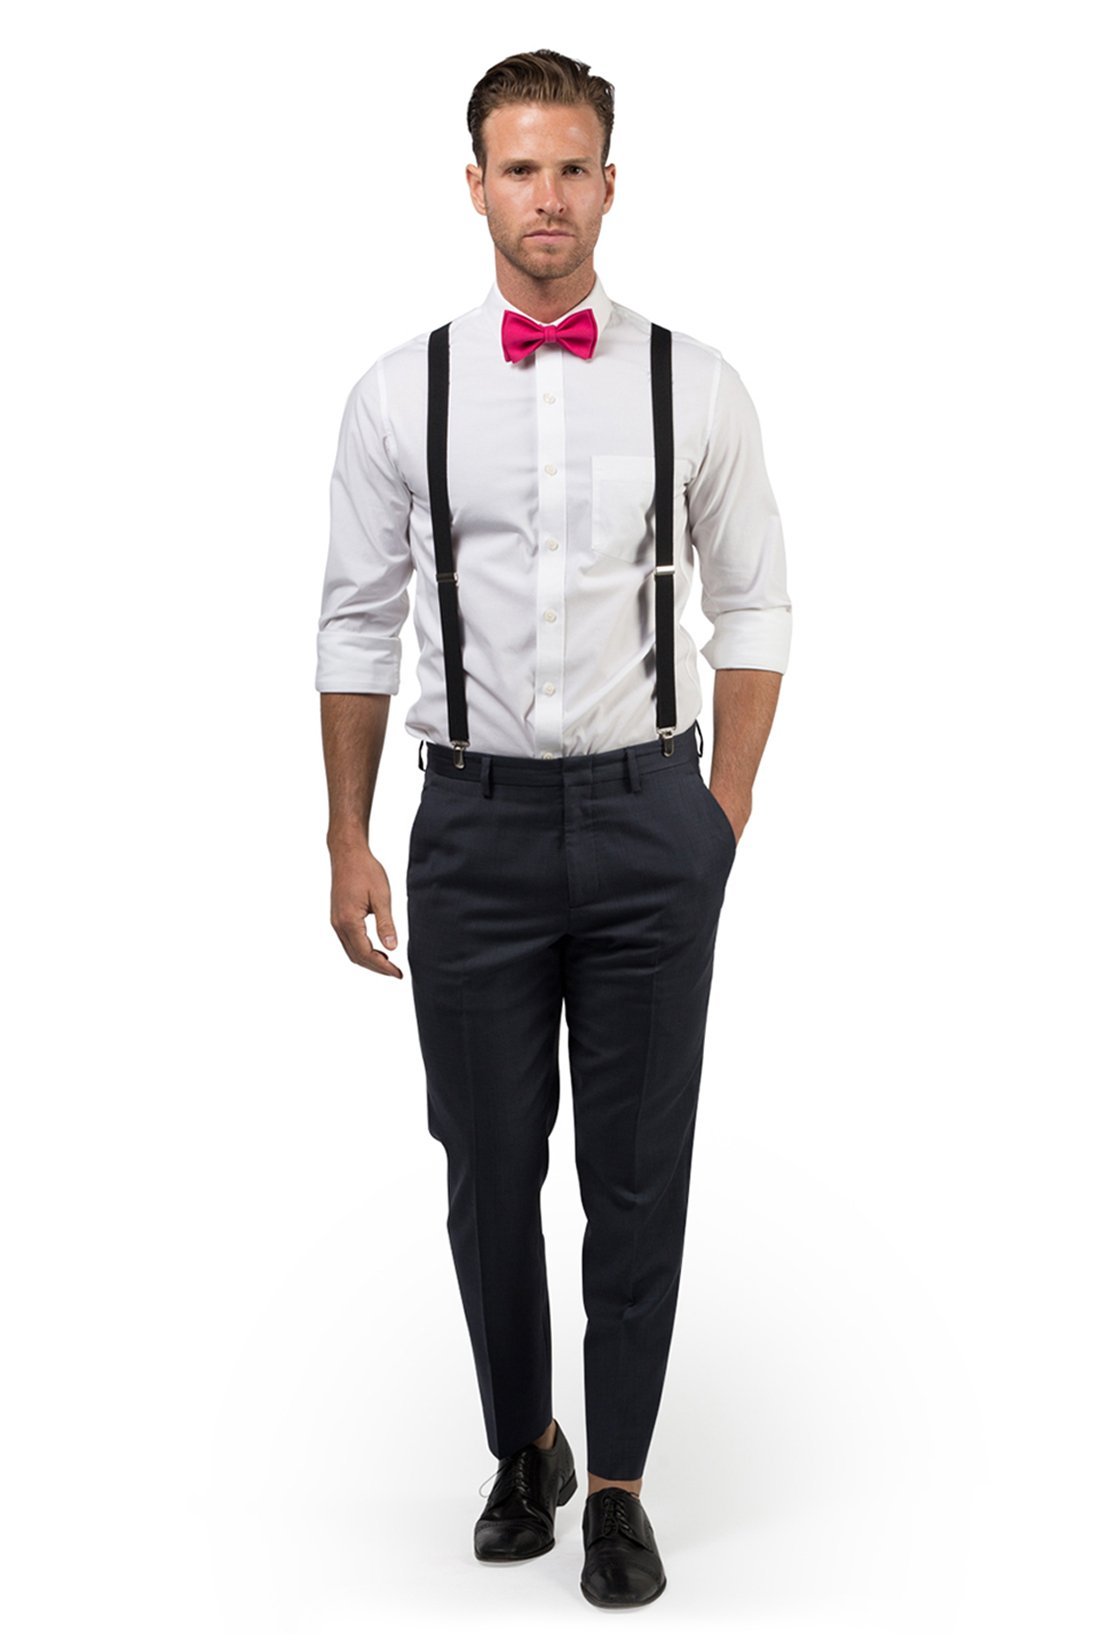 Black Suspenders & Hot Pink Bow Tie